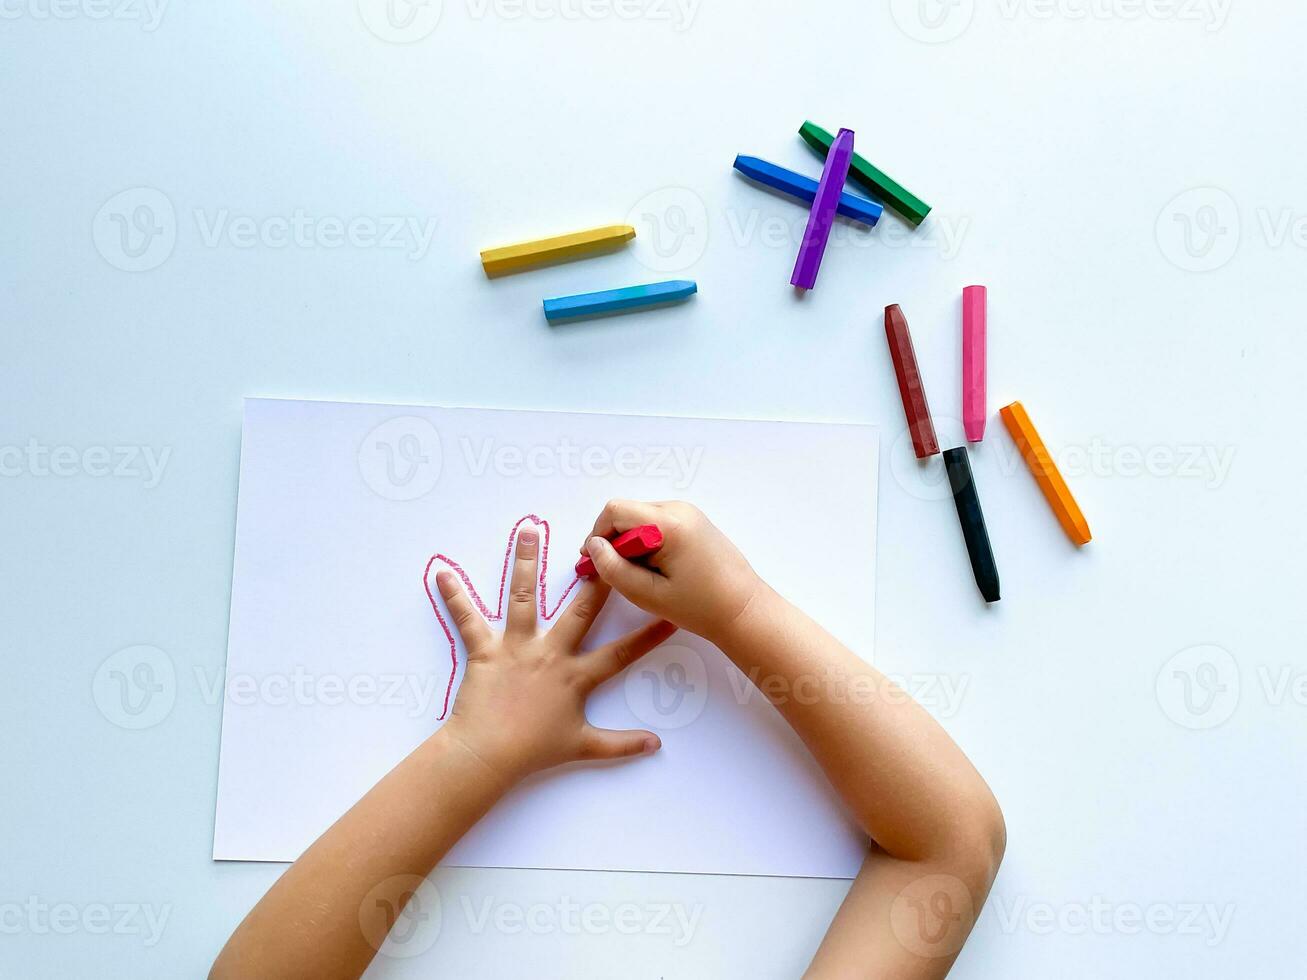 crianças mãos desenhar seus mão com cera giz de cera em branco papel, topo visualizar. foto